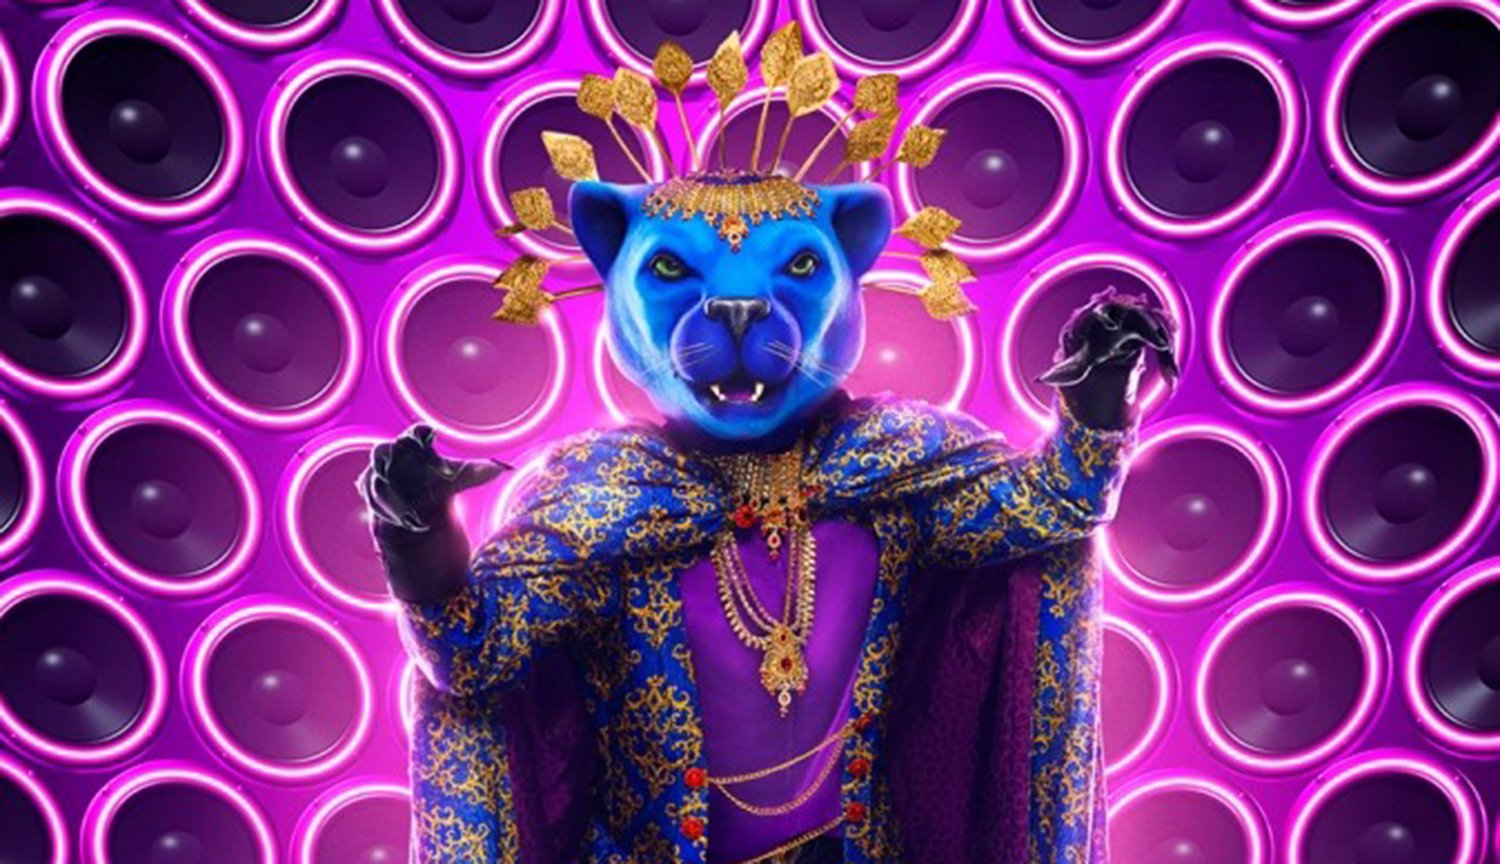 Panther on The Masked Singer Season 8